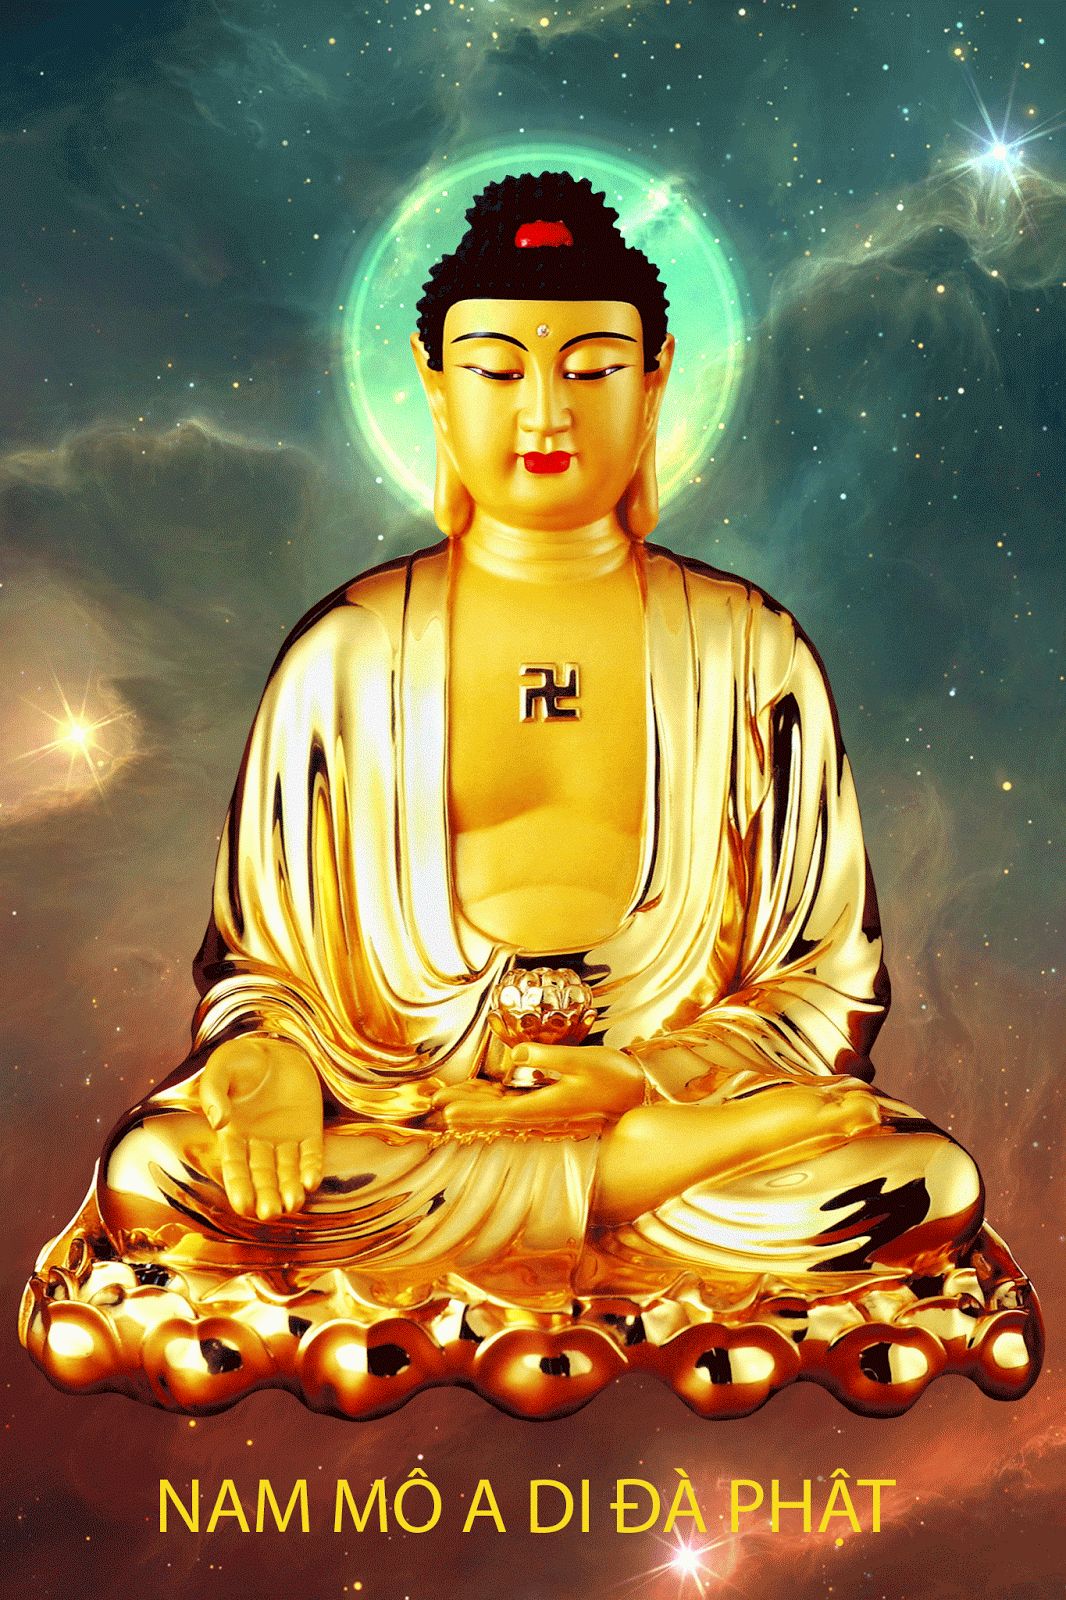 Có nên để ảnh Phật làm hình nền điện thoại